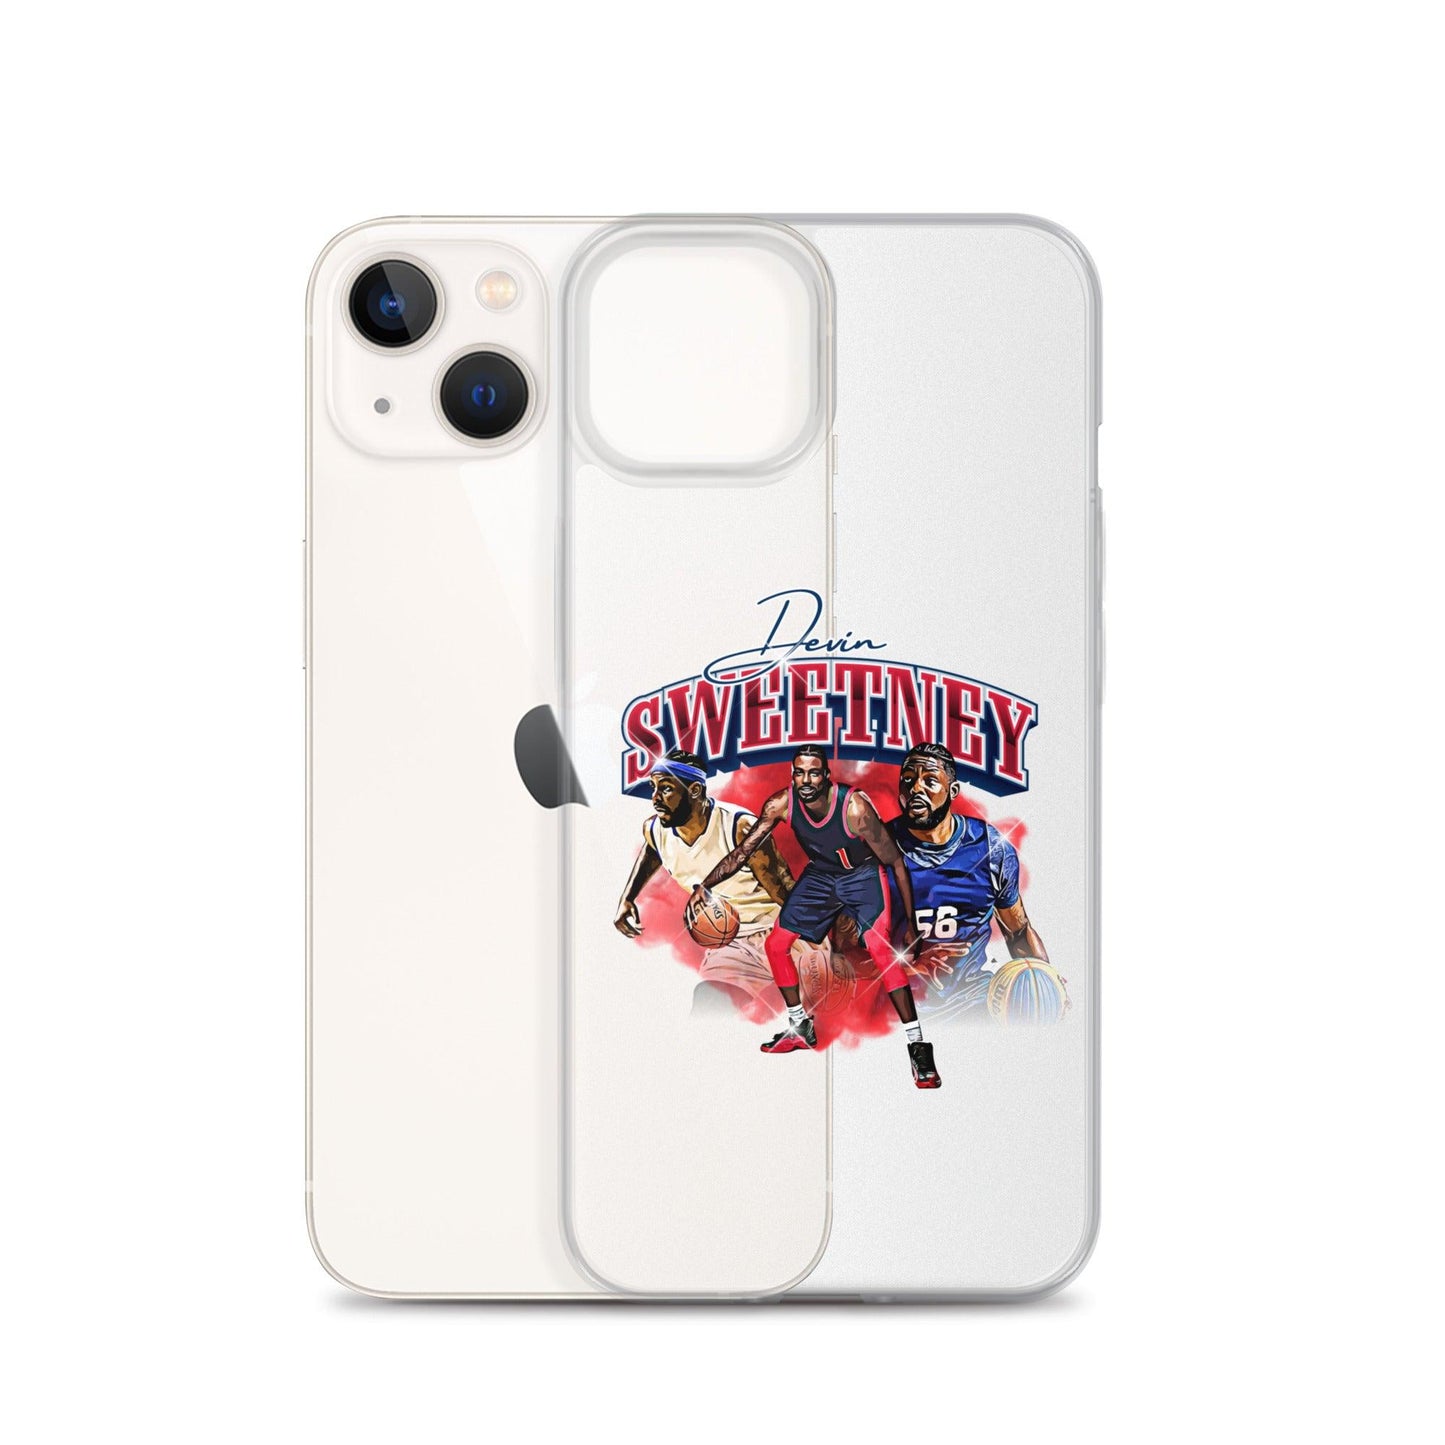 Devin Sweetney "Legacy" iPhone Case - Fan Arch